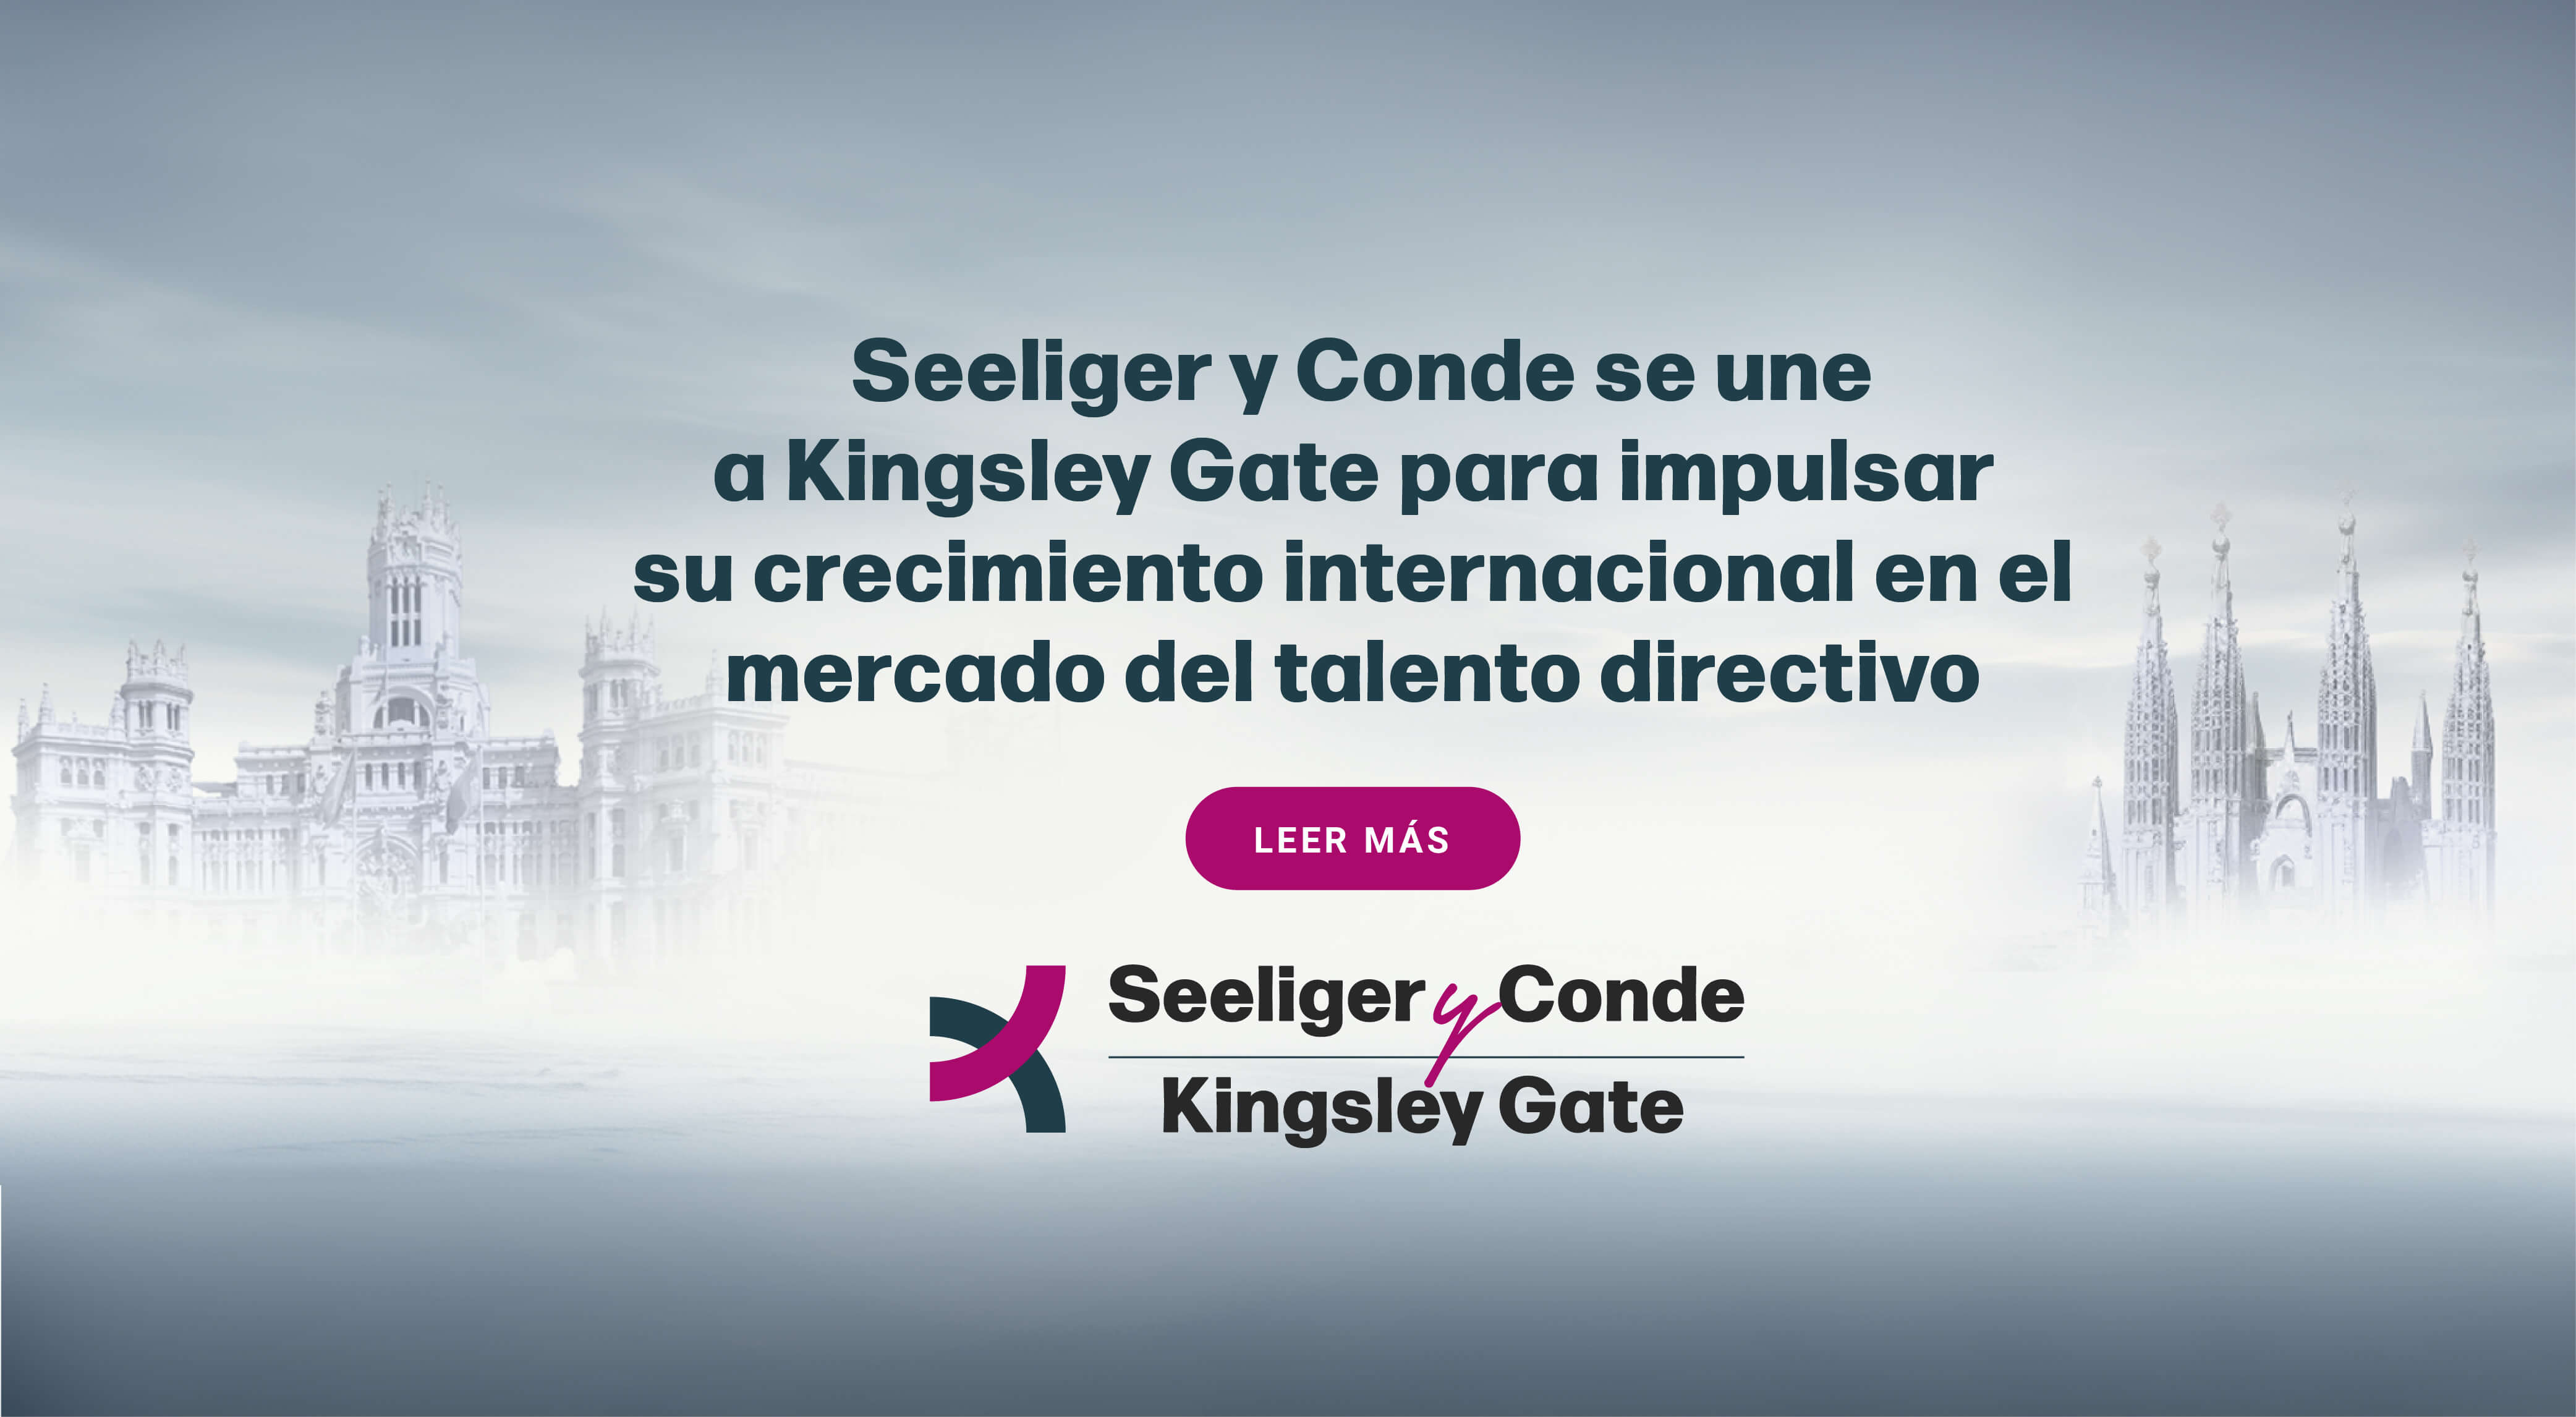 Seeliger y COnde & Kingsley Gate